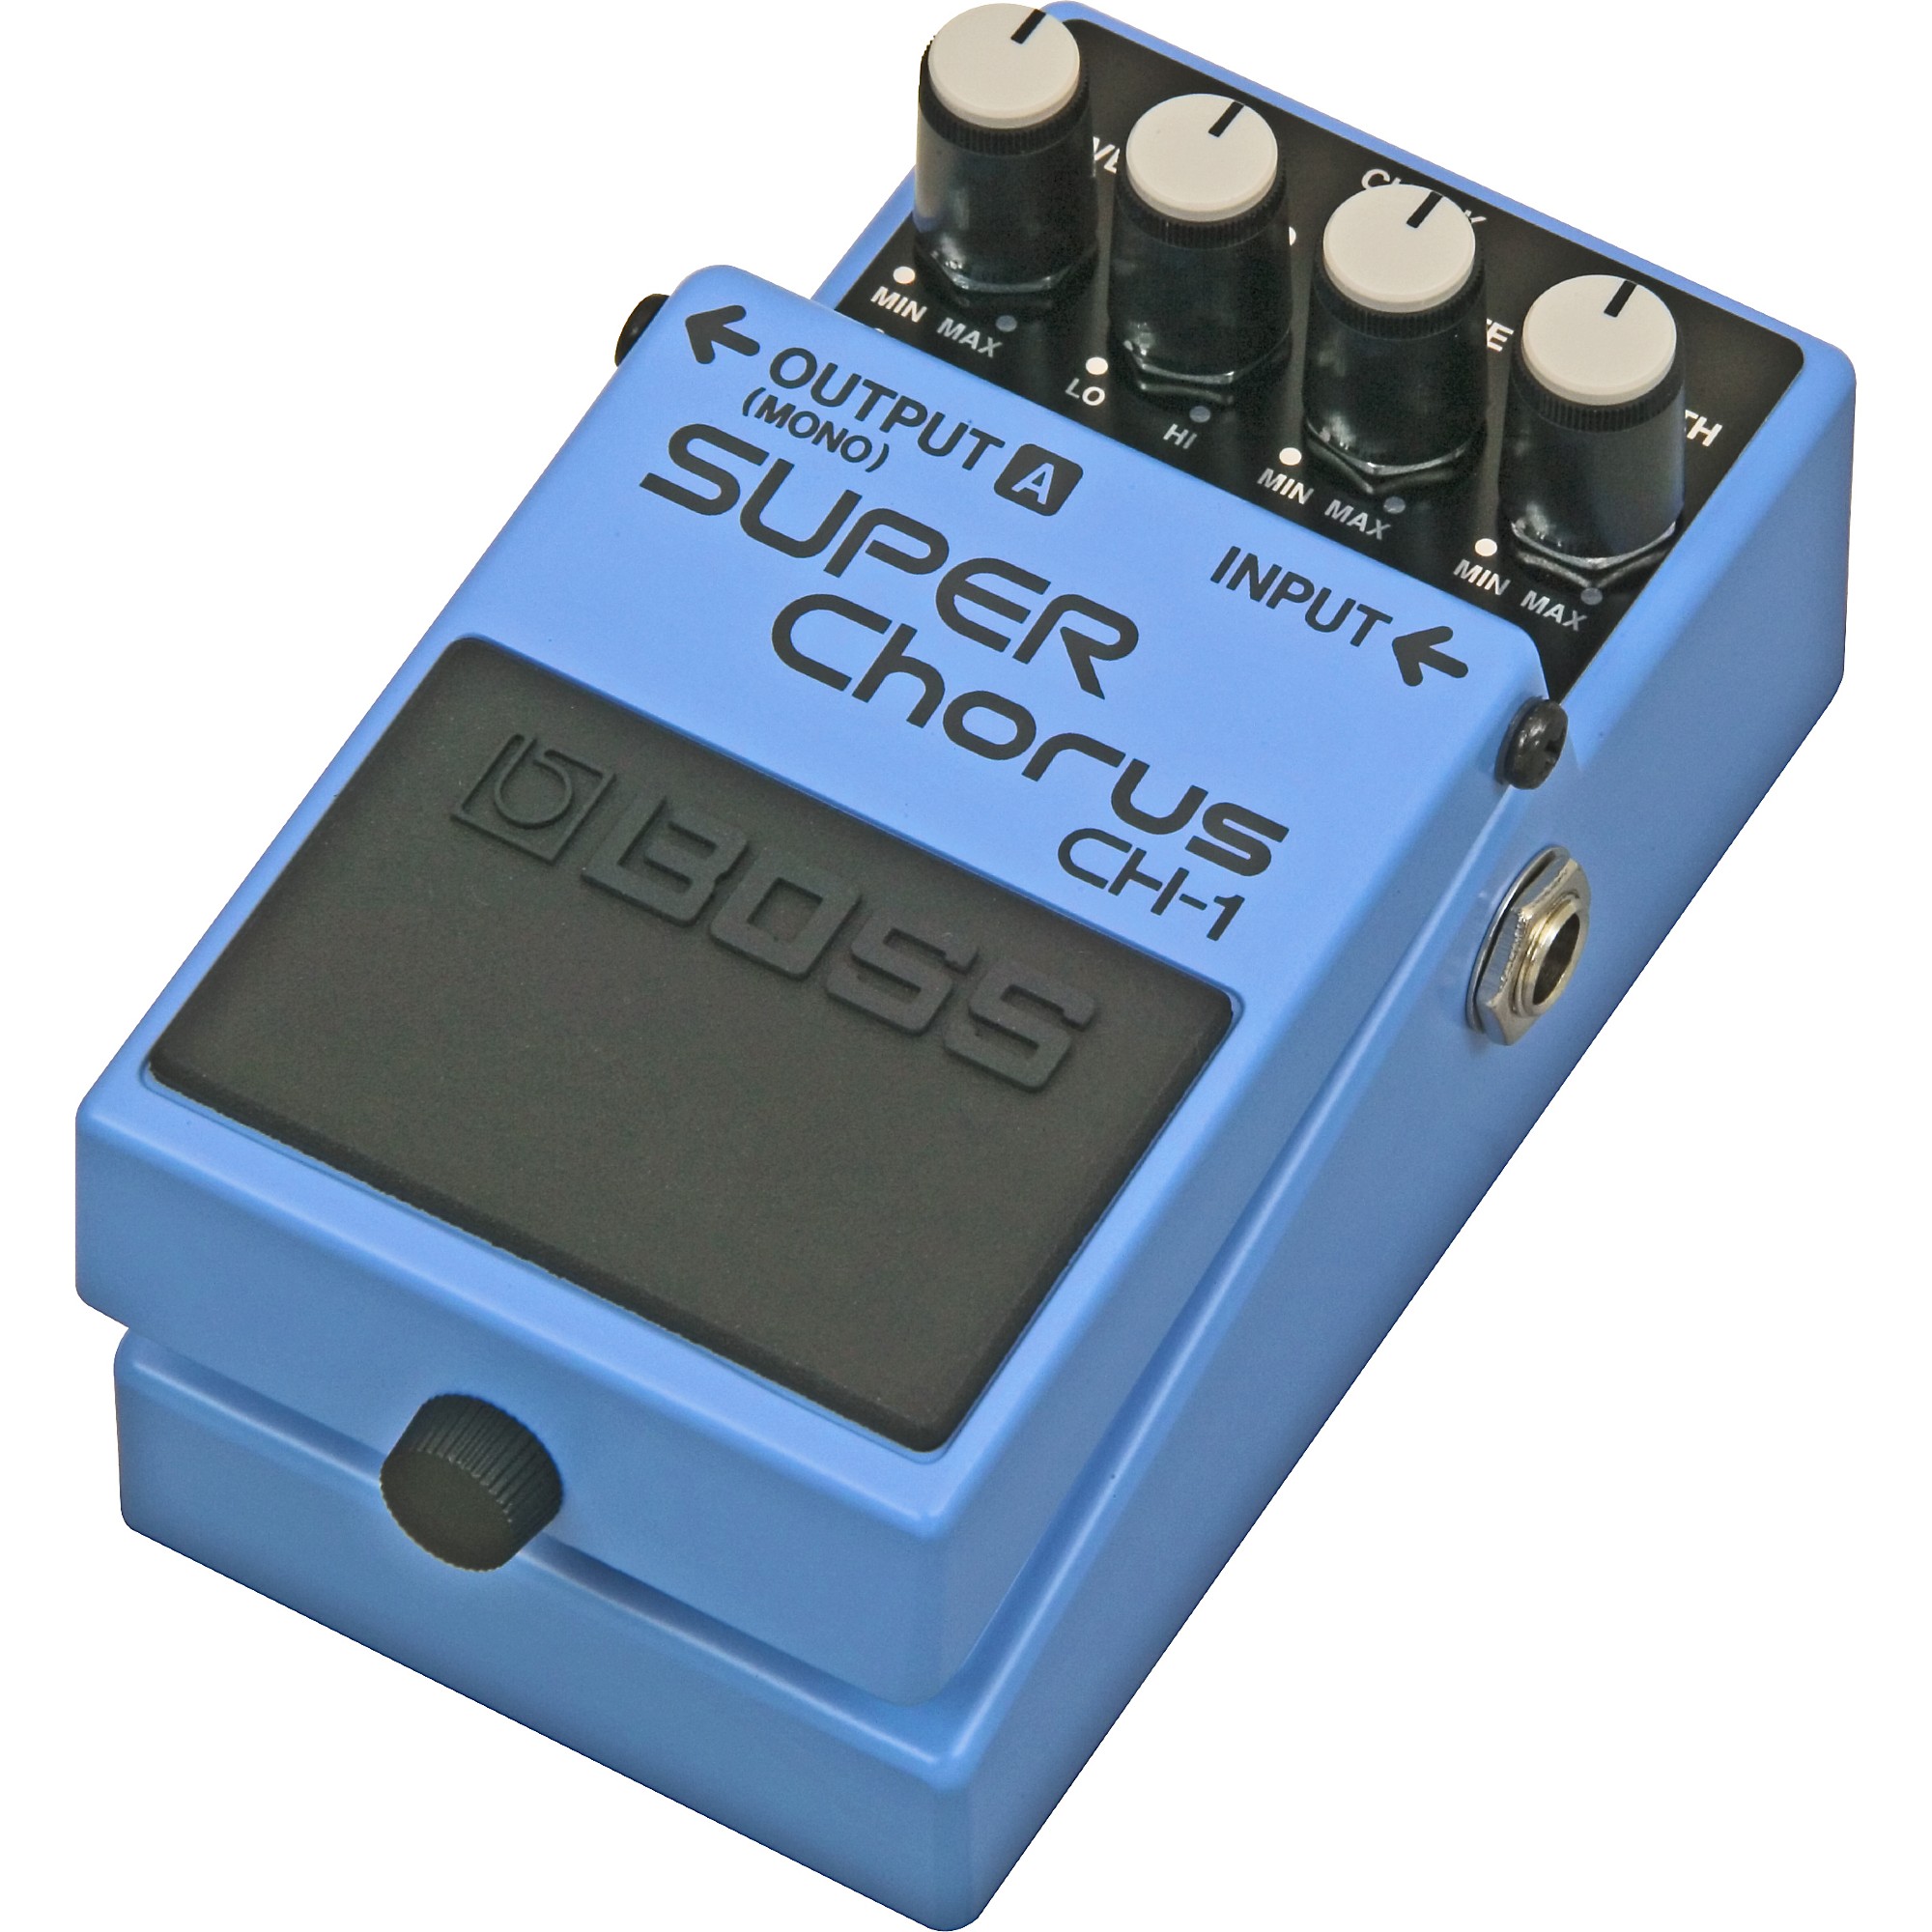 BOSS CH-1 Super Chorus Effects Pedal